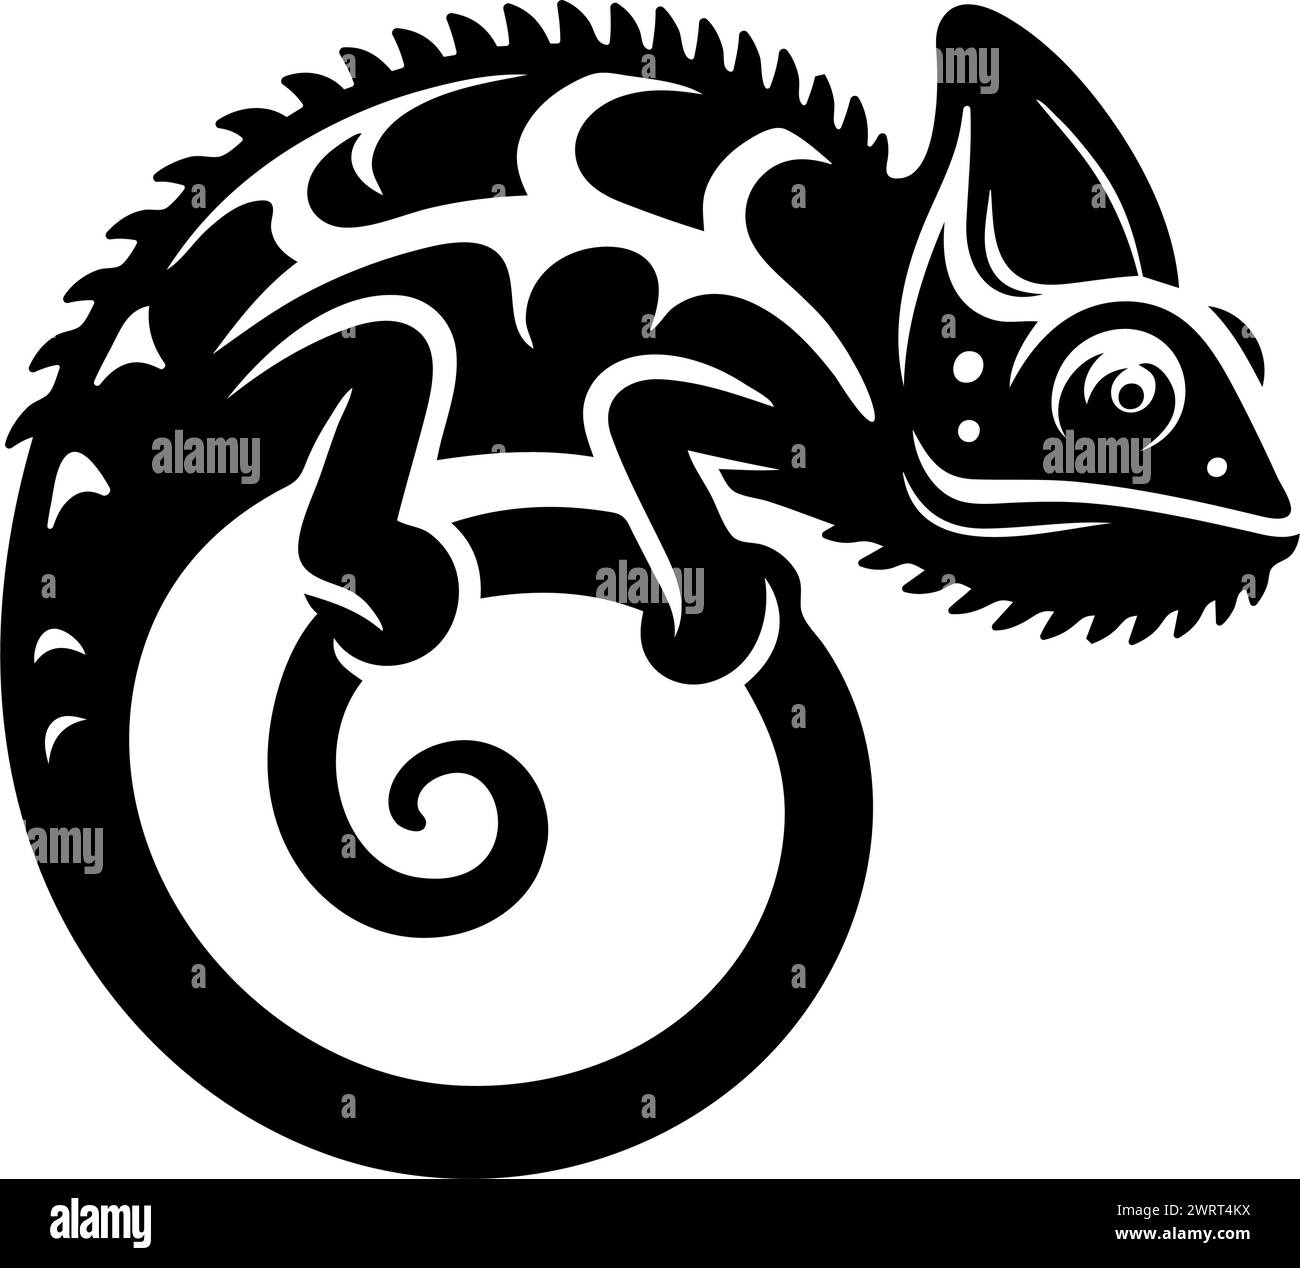 Chameleon silhouette clip art logo. Vector illustration Stock Vector